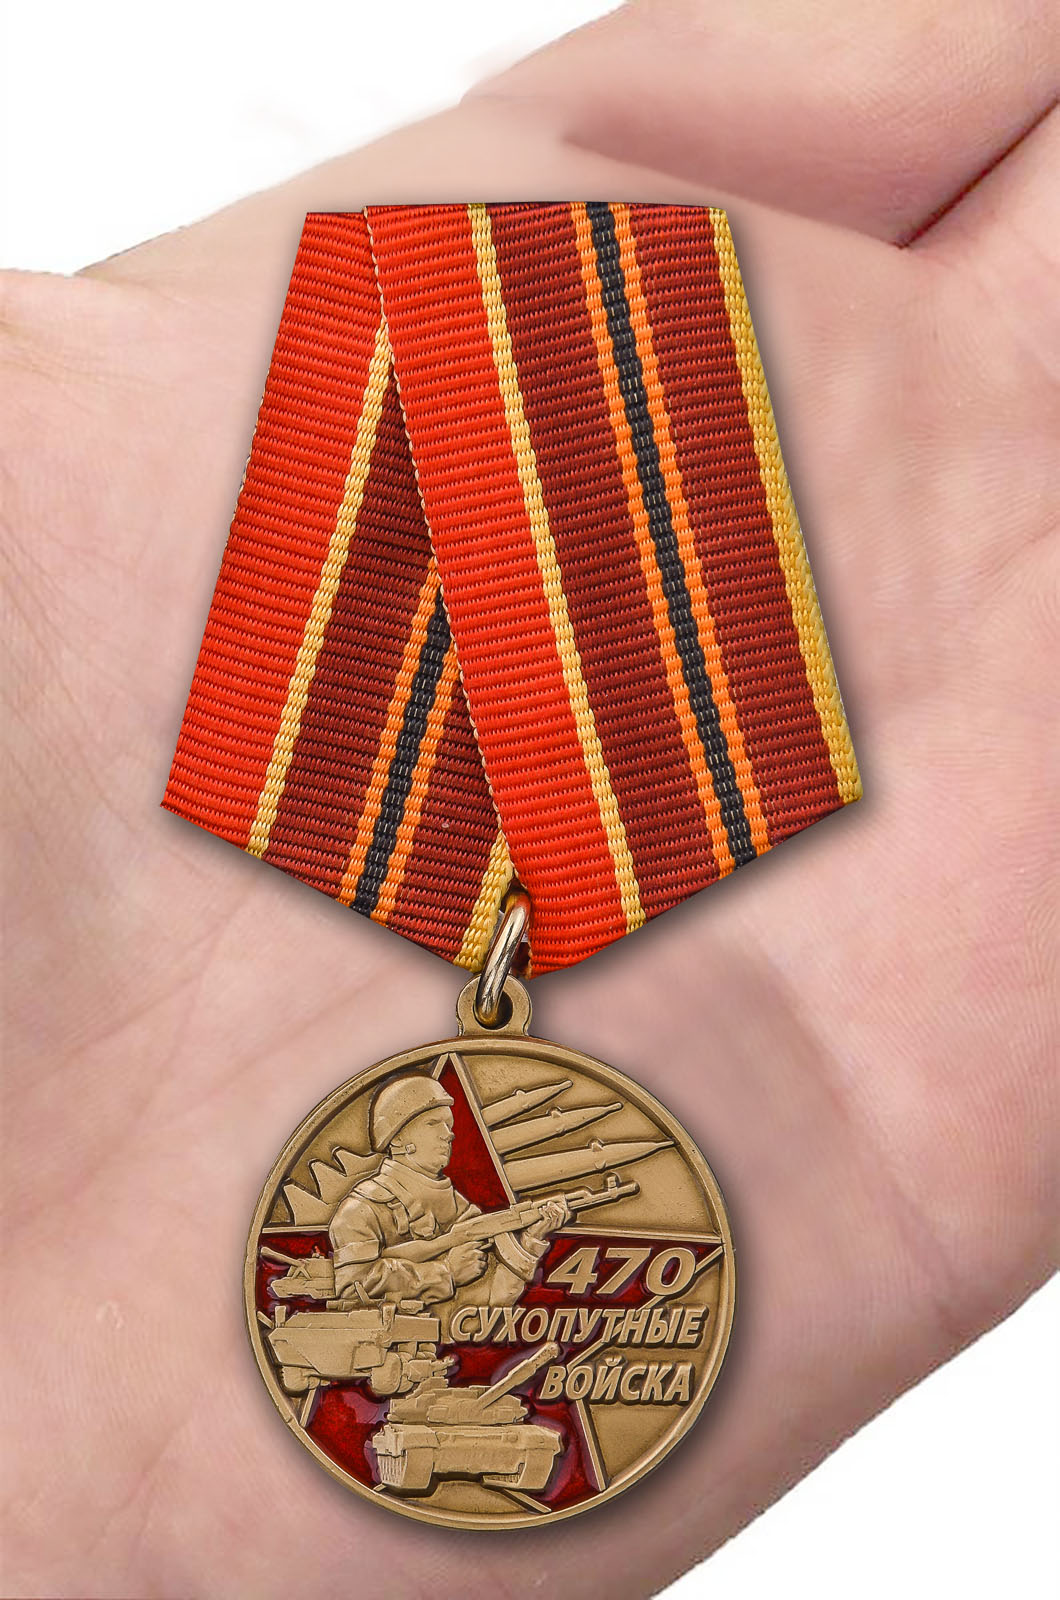 Нагрудная медаль "470 лет Сухопутным войскам" 